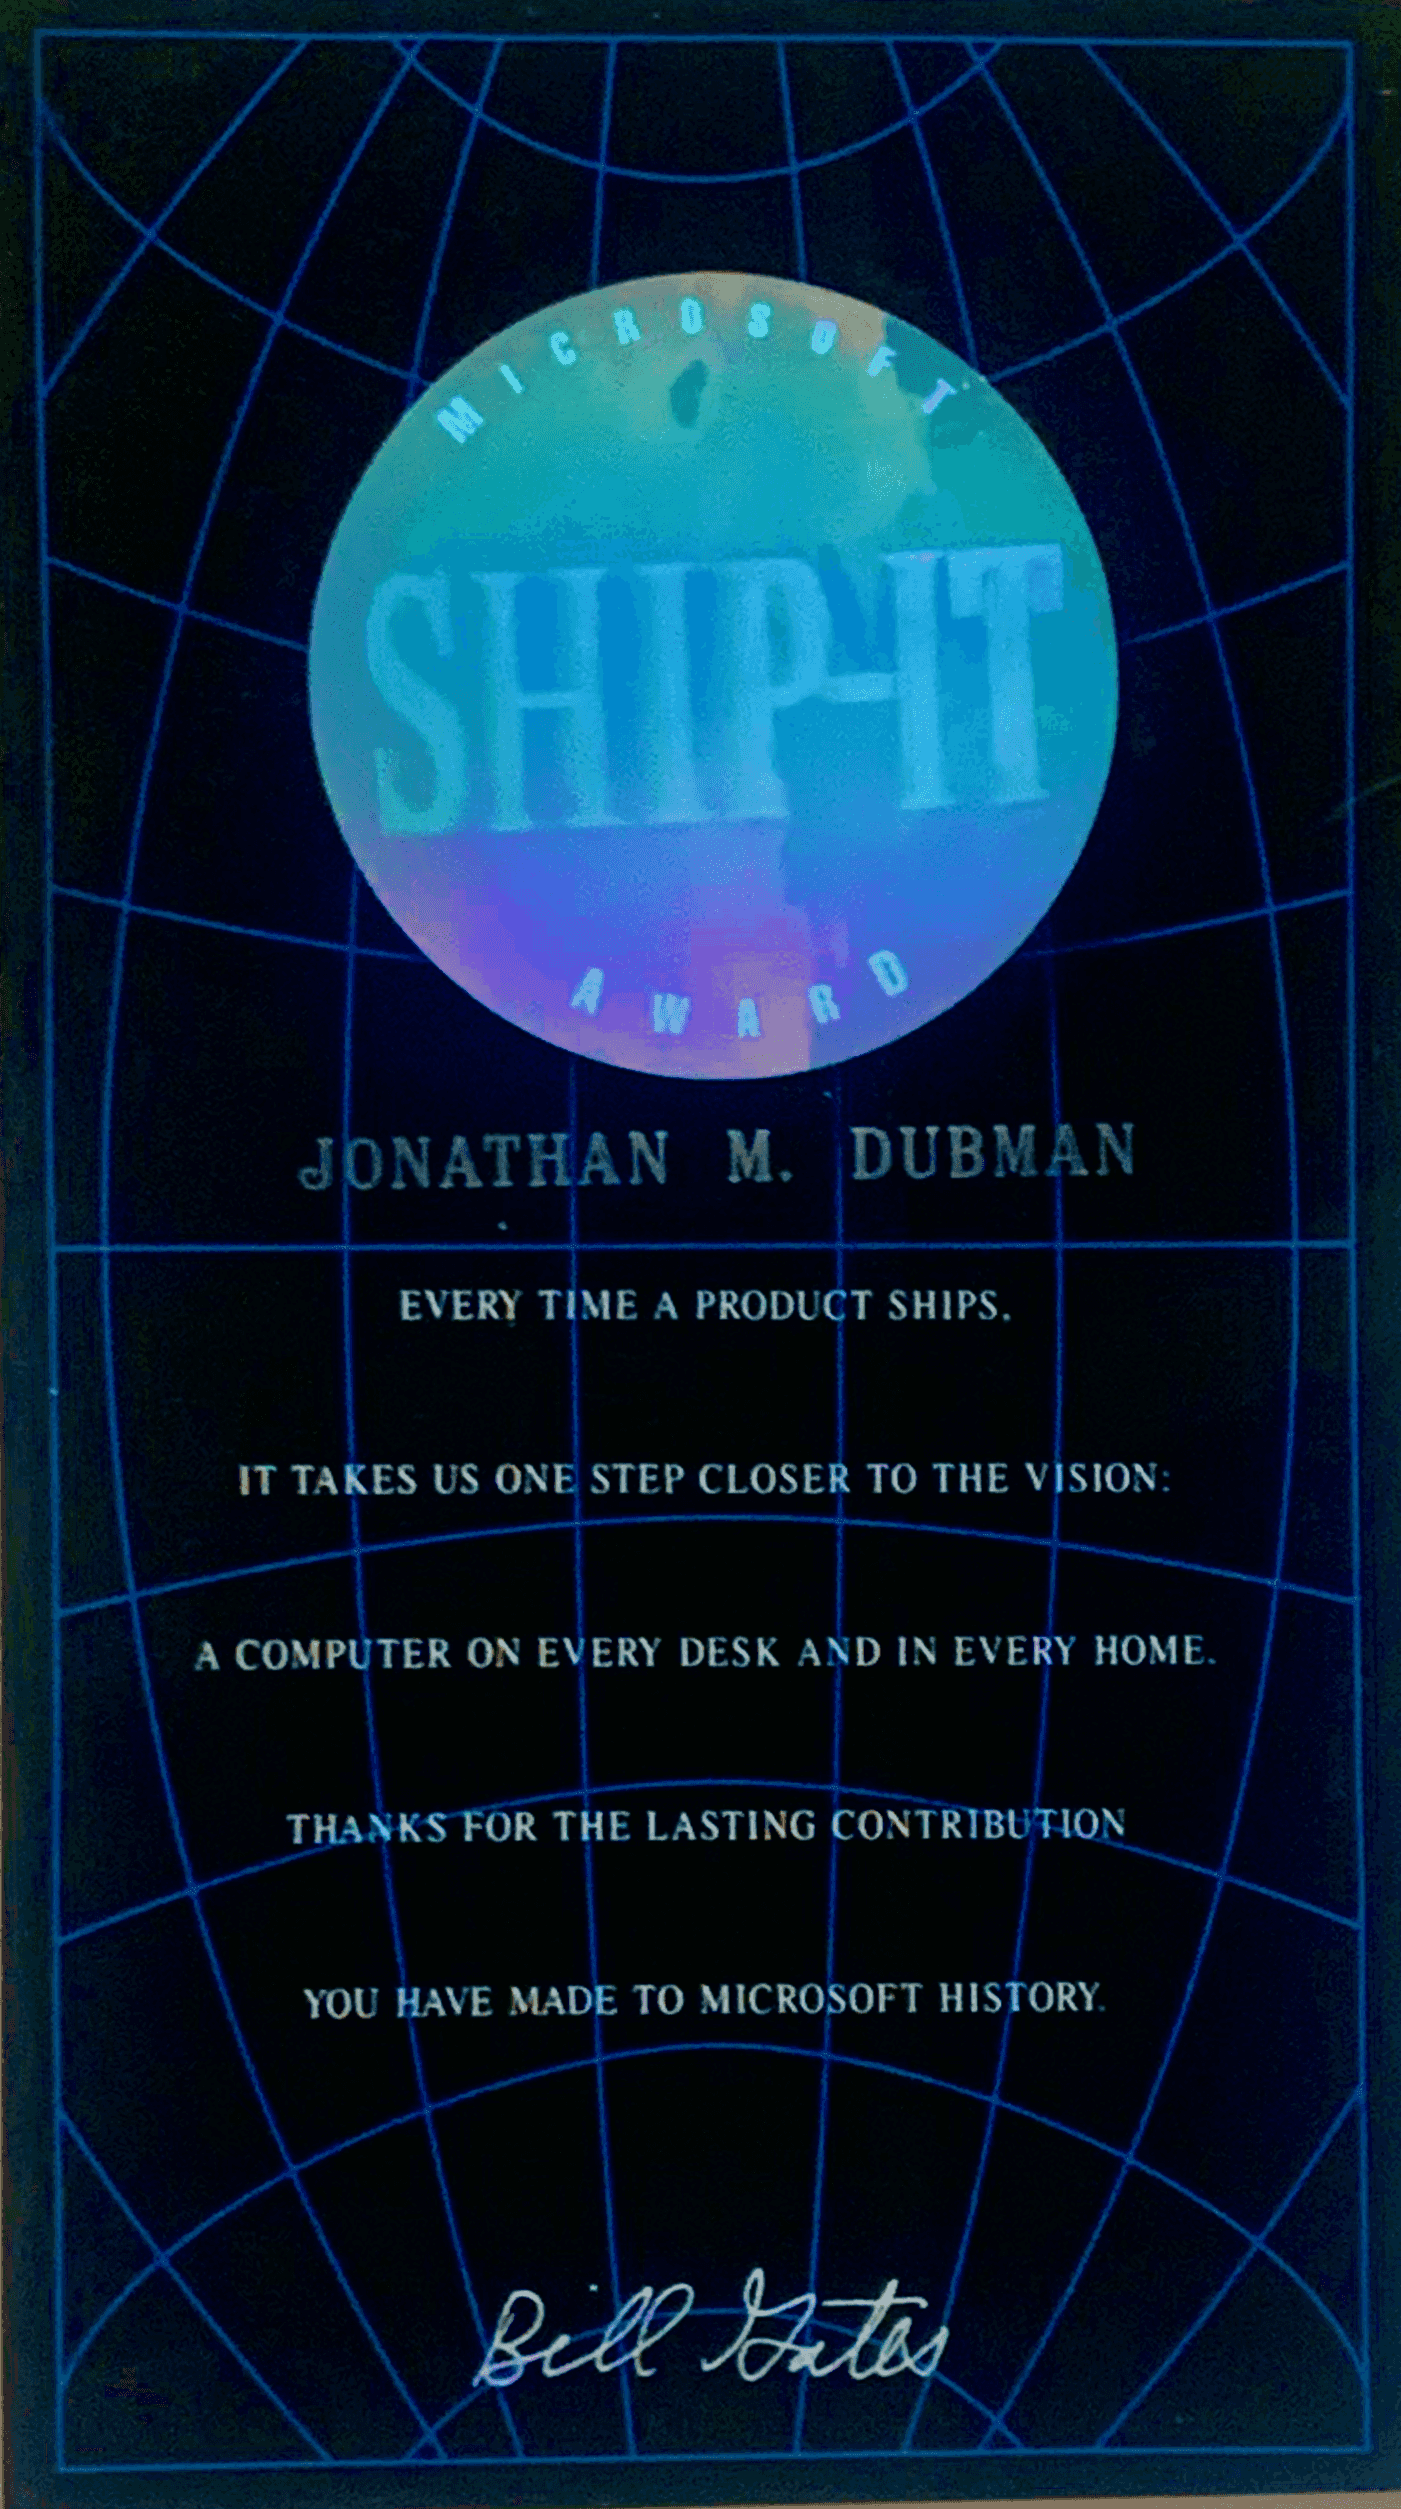 Microsoft Ship It Award - Jonathan Dubman